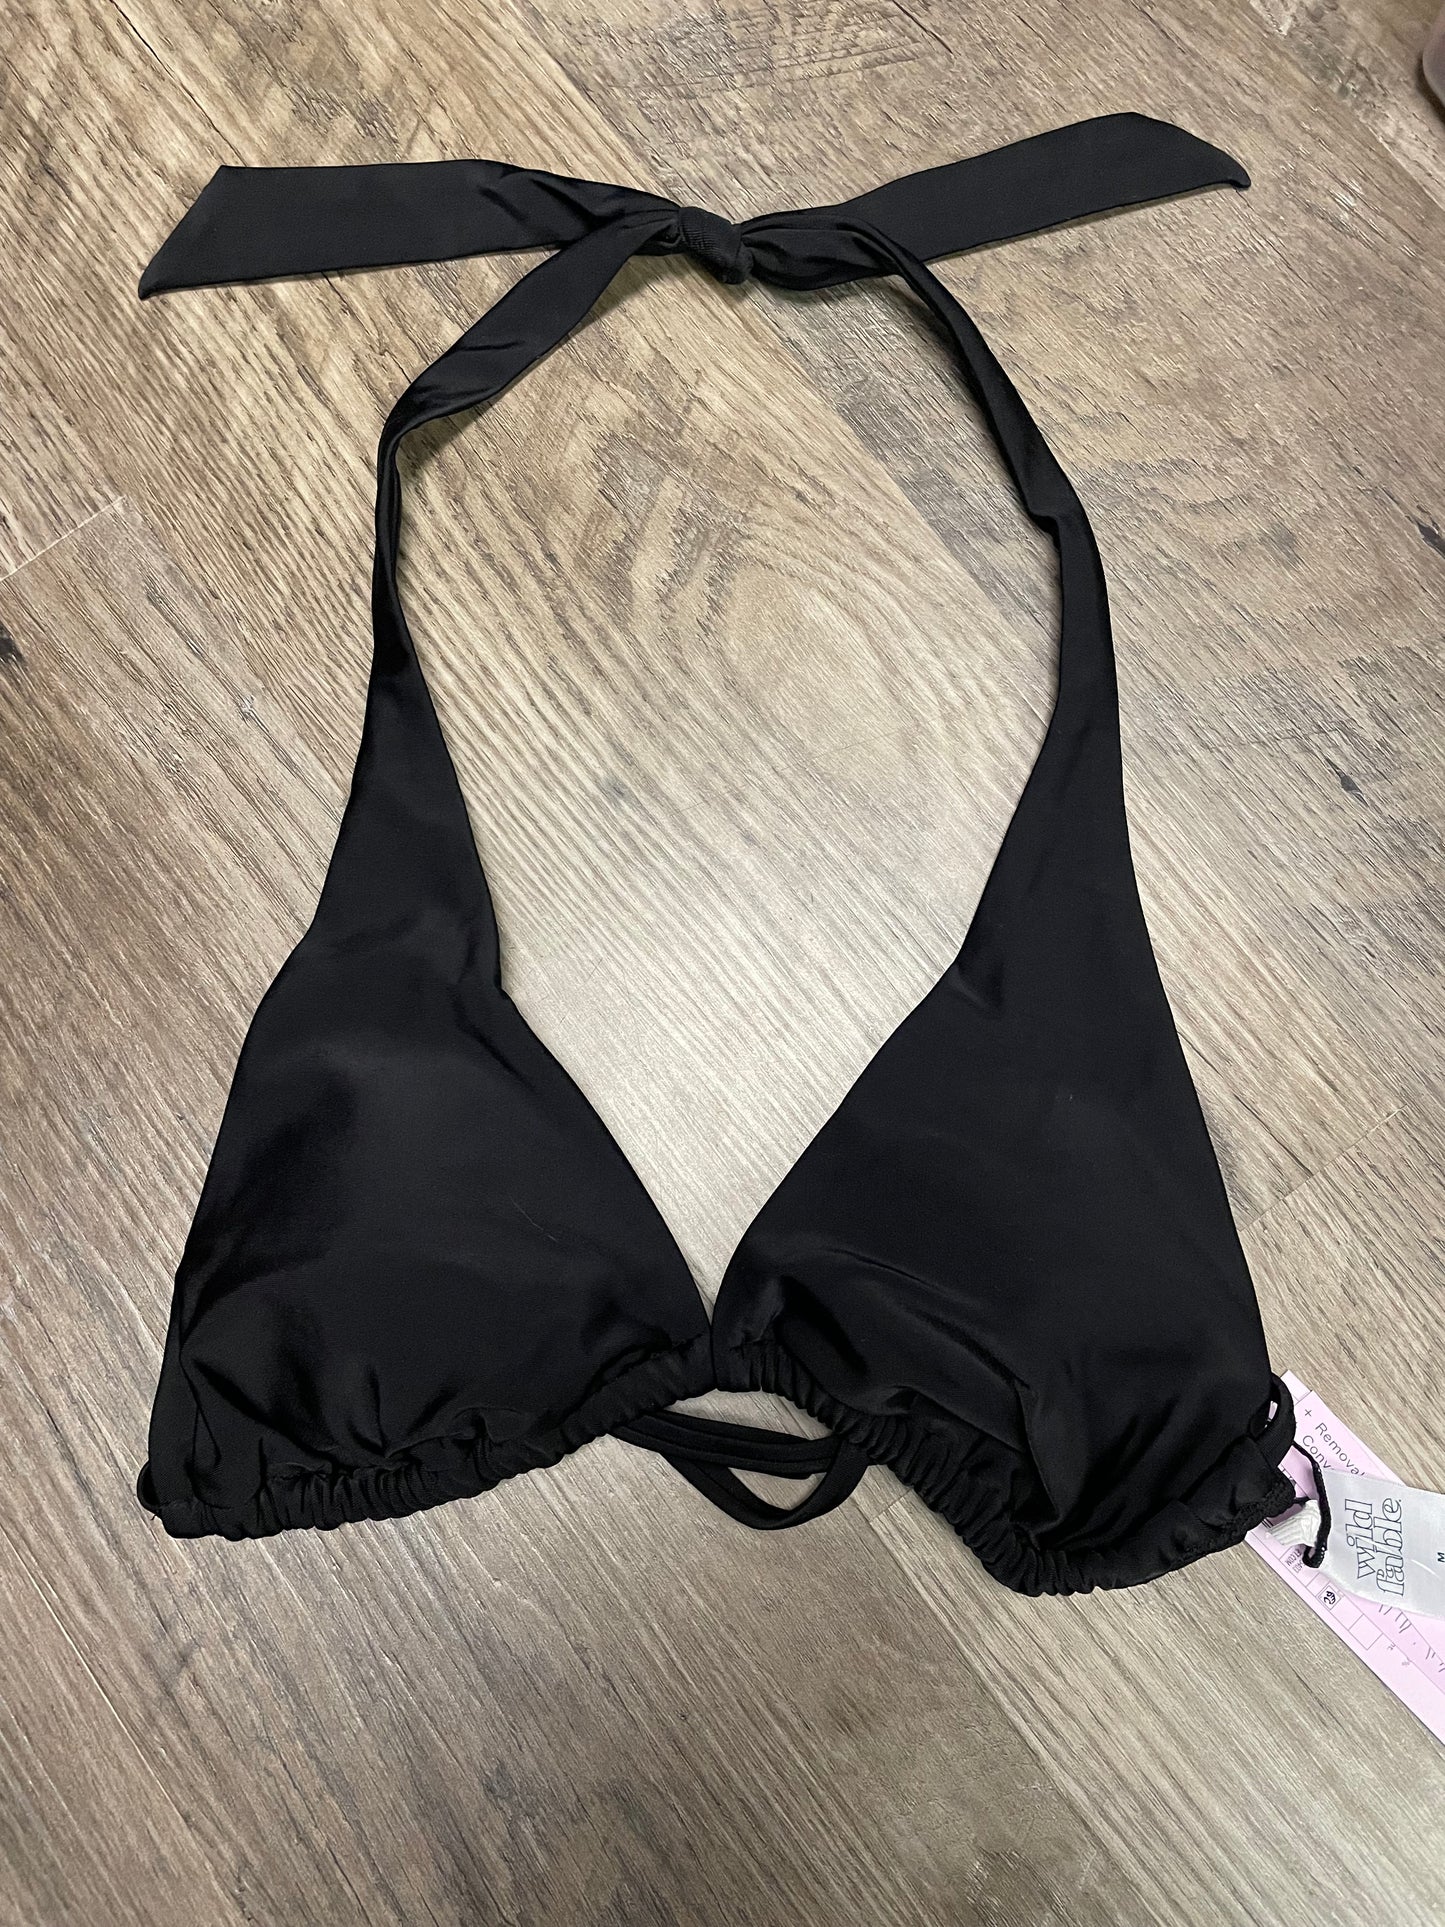 New Women S 2-4 bikini top. Wild fable. Black